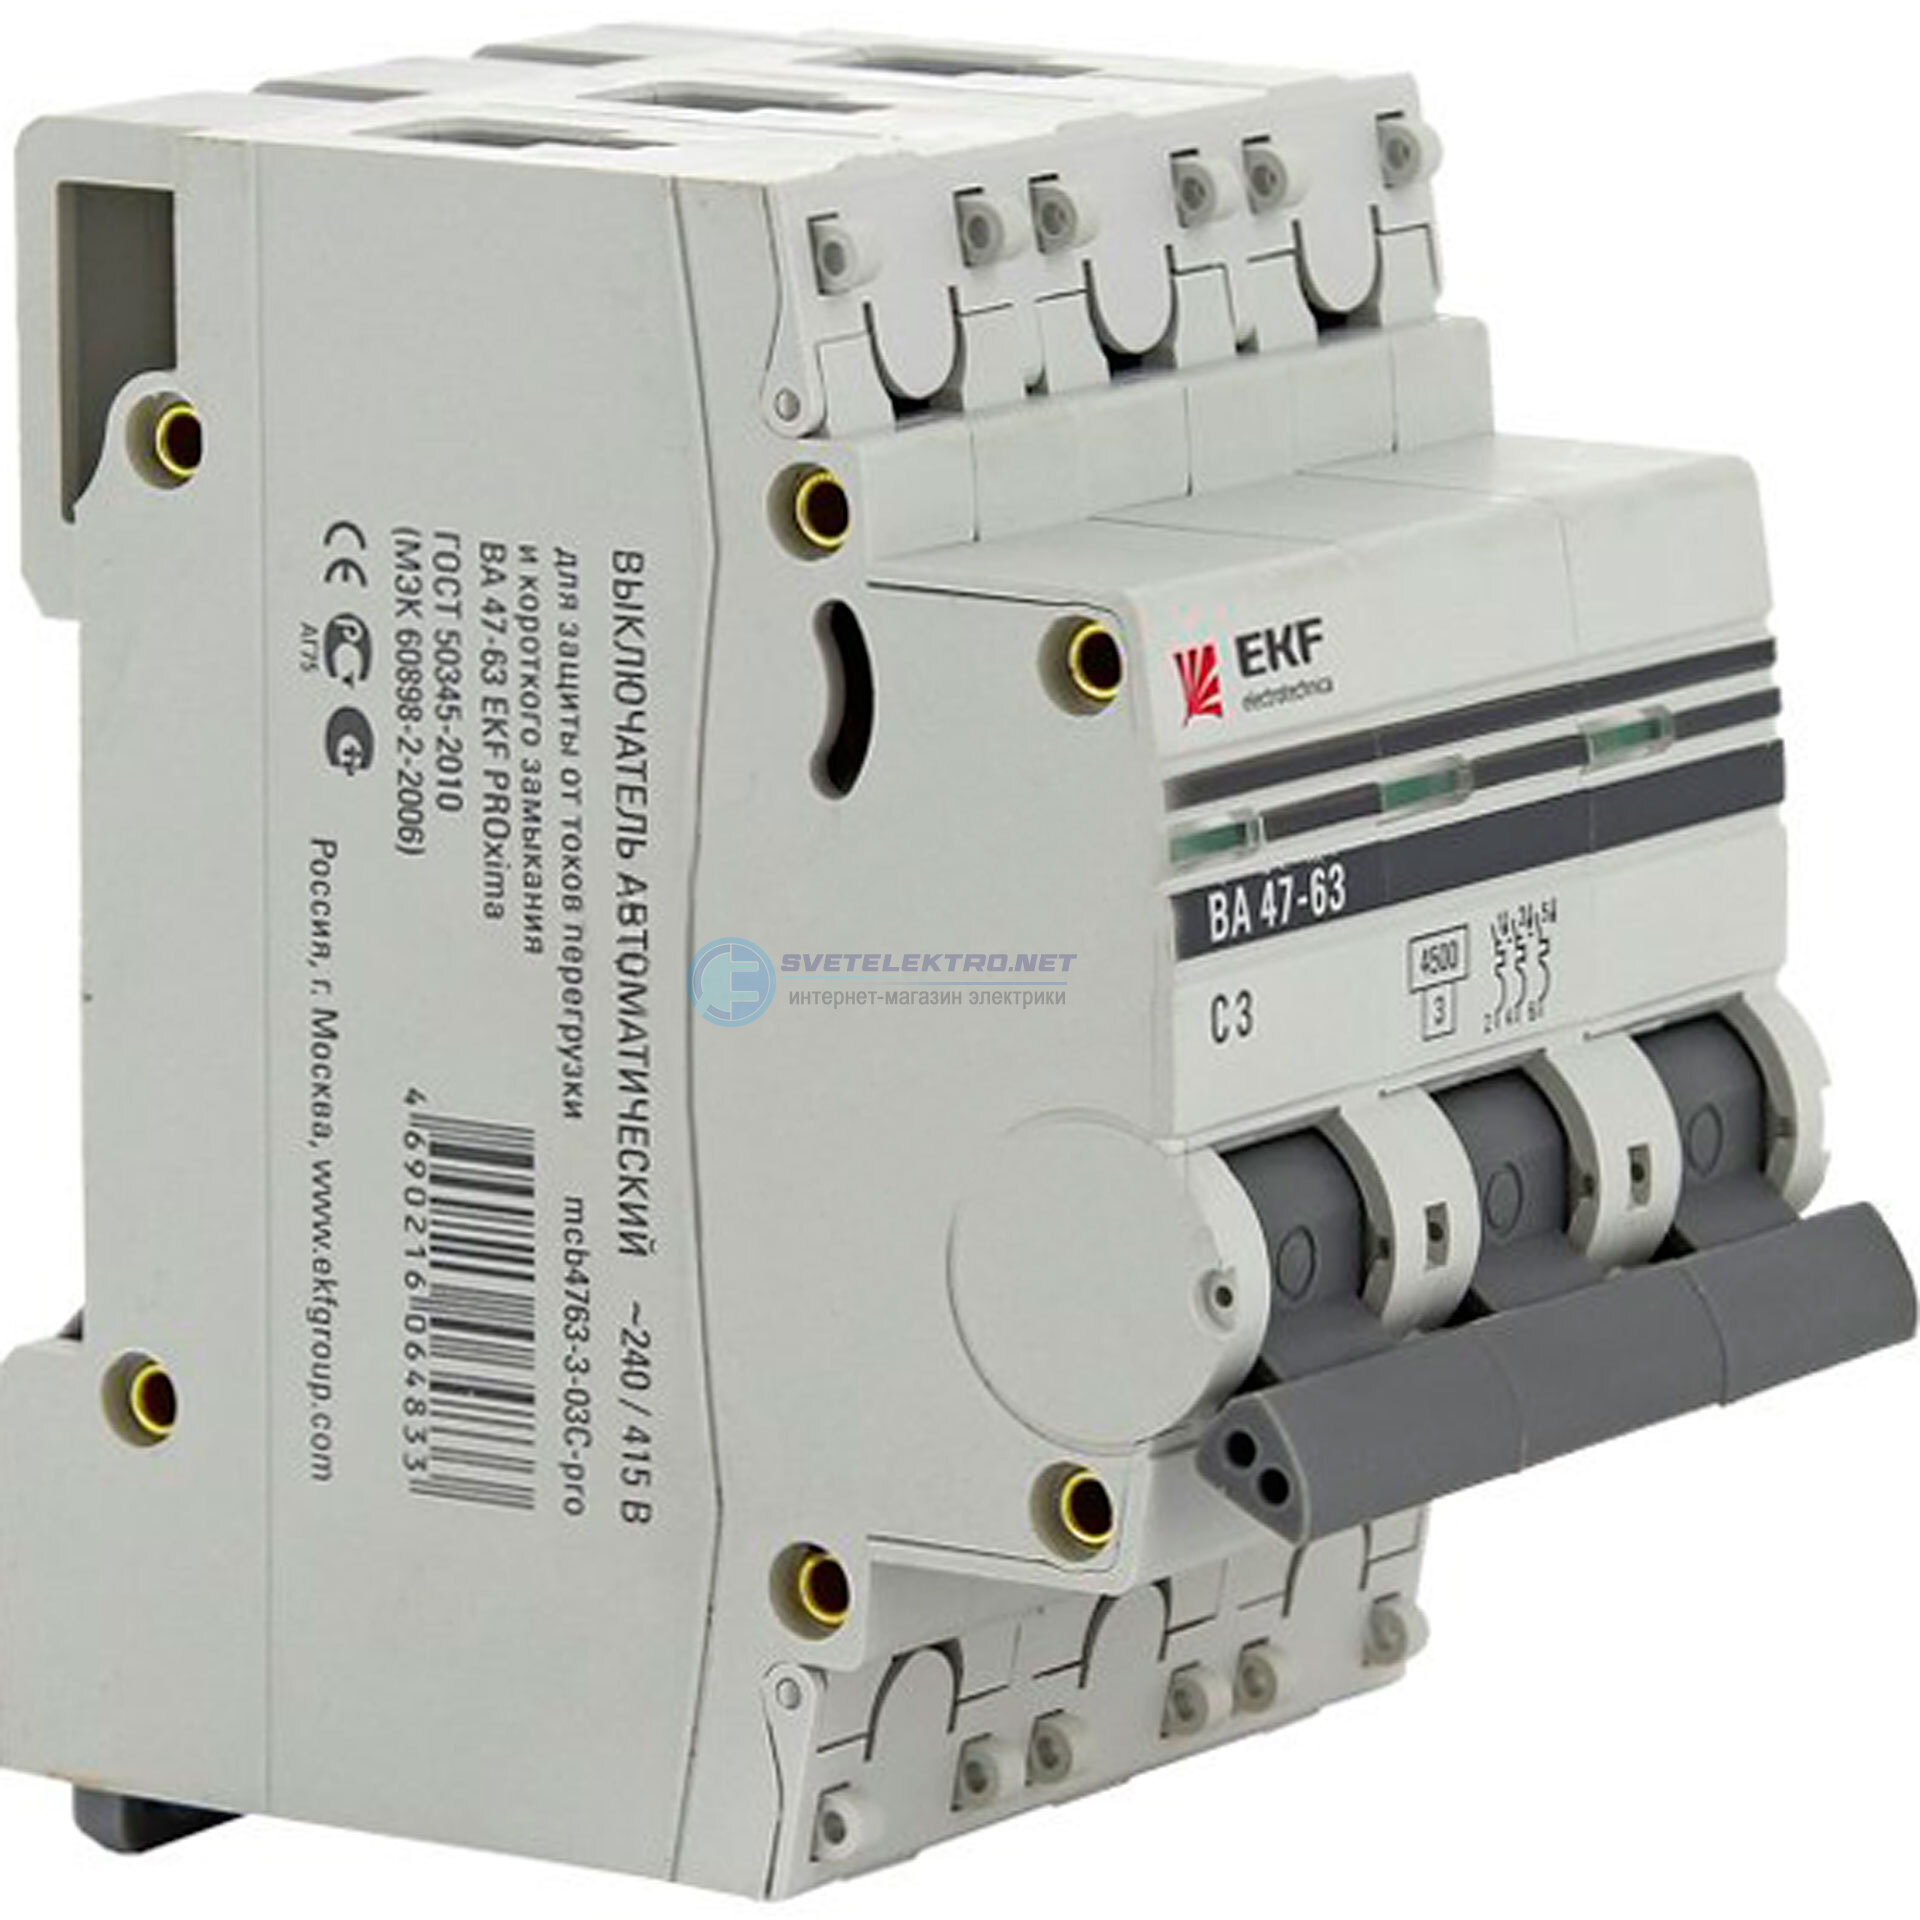 Выключатель автоматический 2 10а. Автоматический выключатель EKF ва 47-63. Автоматический выключатель EKF proxima ва47-63. Автоматический выключатель EKF c40. EKF c25 автомат 47-63.